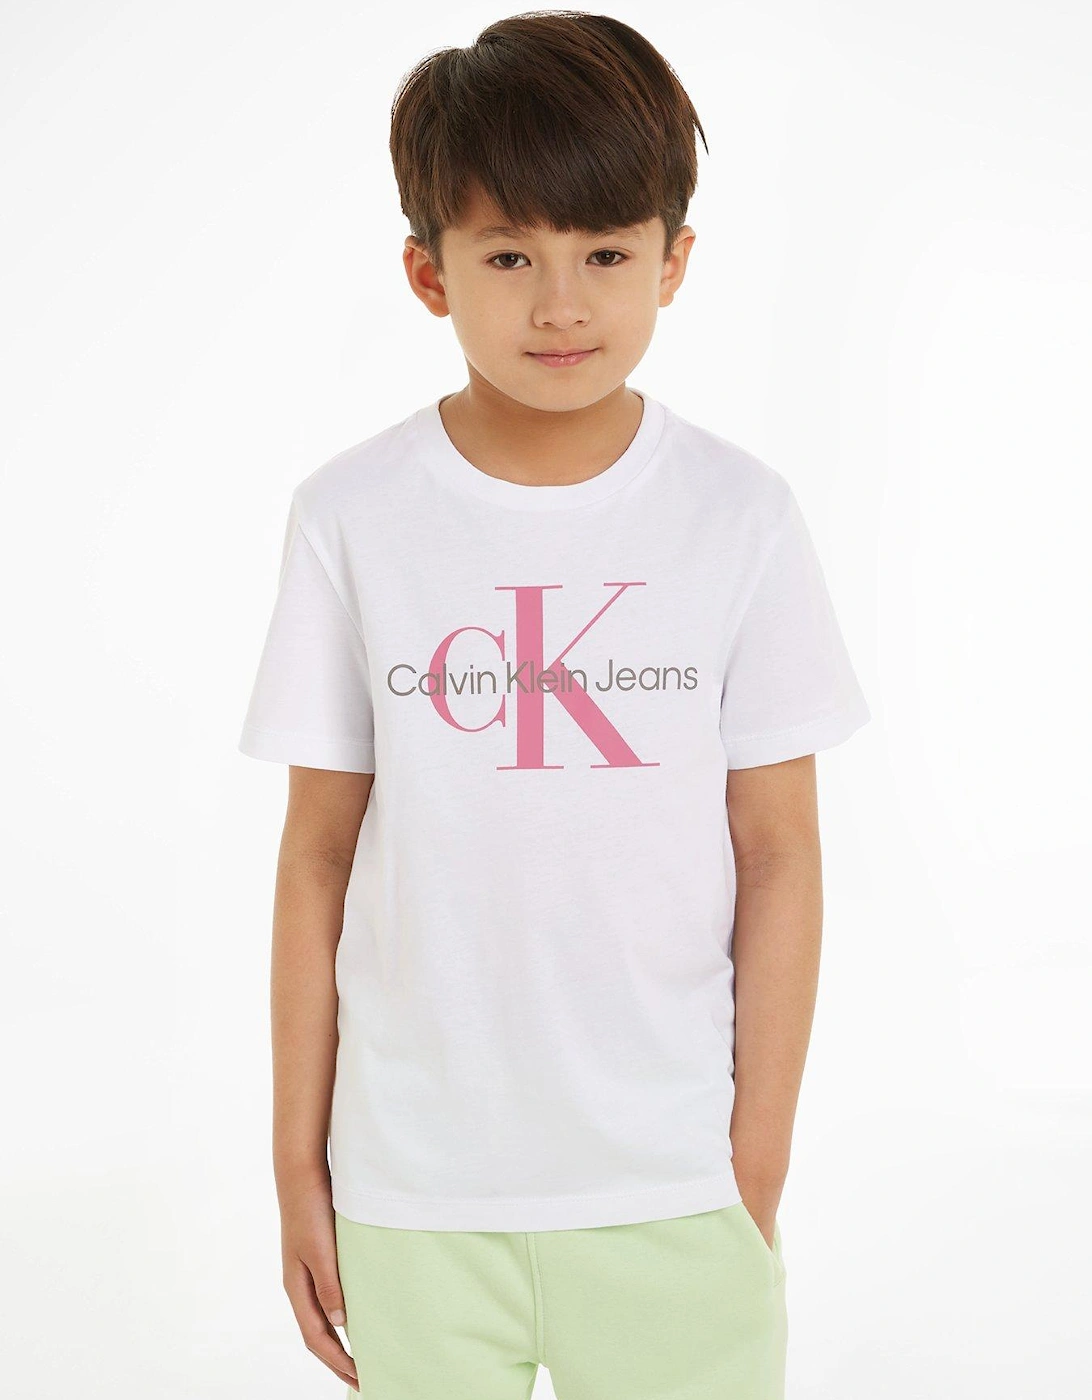 Girls Ck Monogram T-Shirt - White